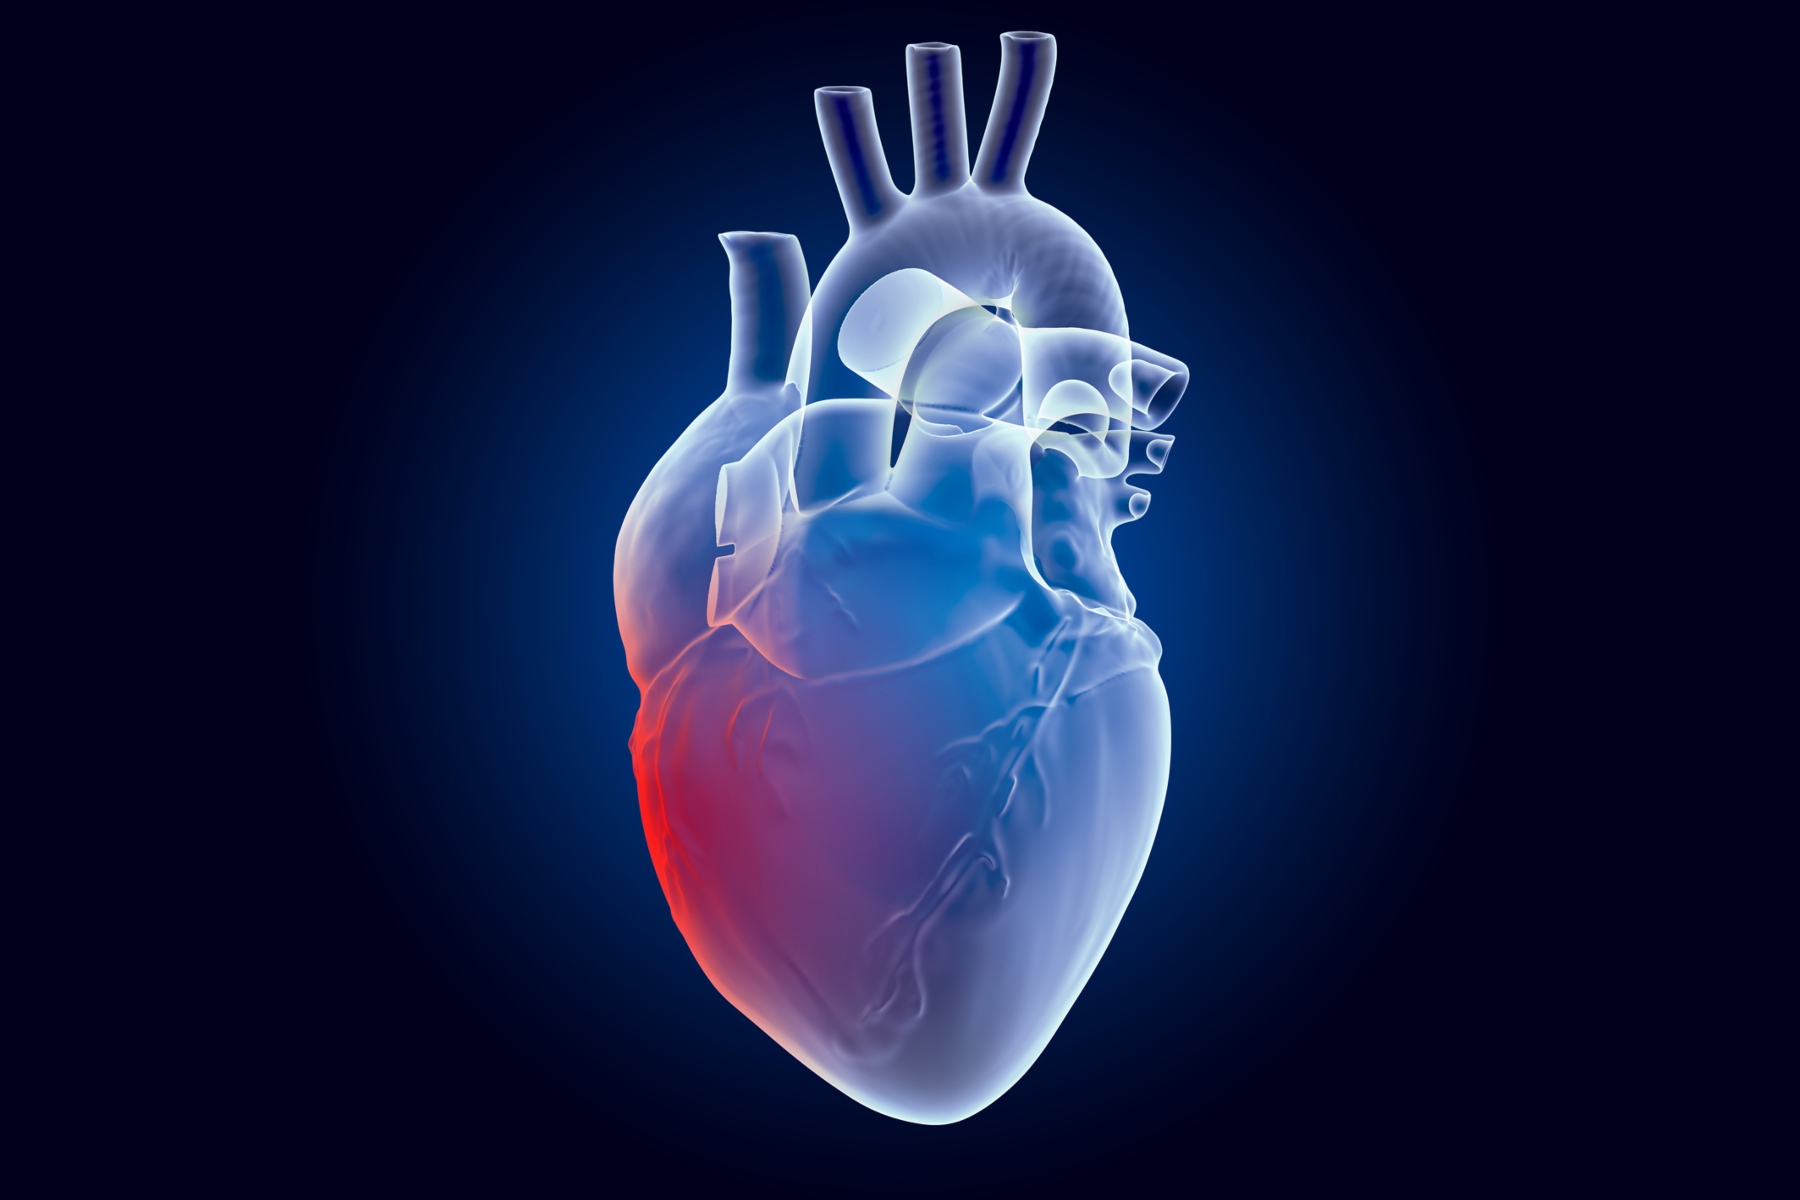 Υγεία καρδιάς: Σύνδεση μεταξύ ιογενών λοιμώξεων και καρδιακών προβλημάτων